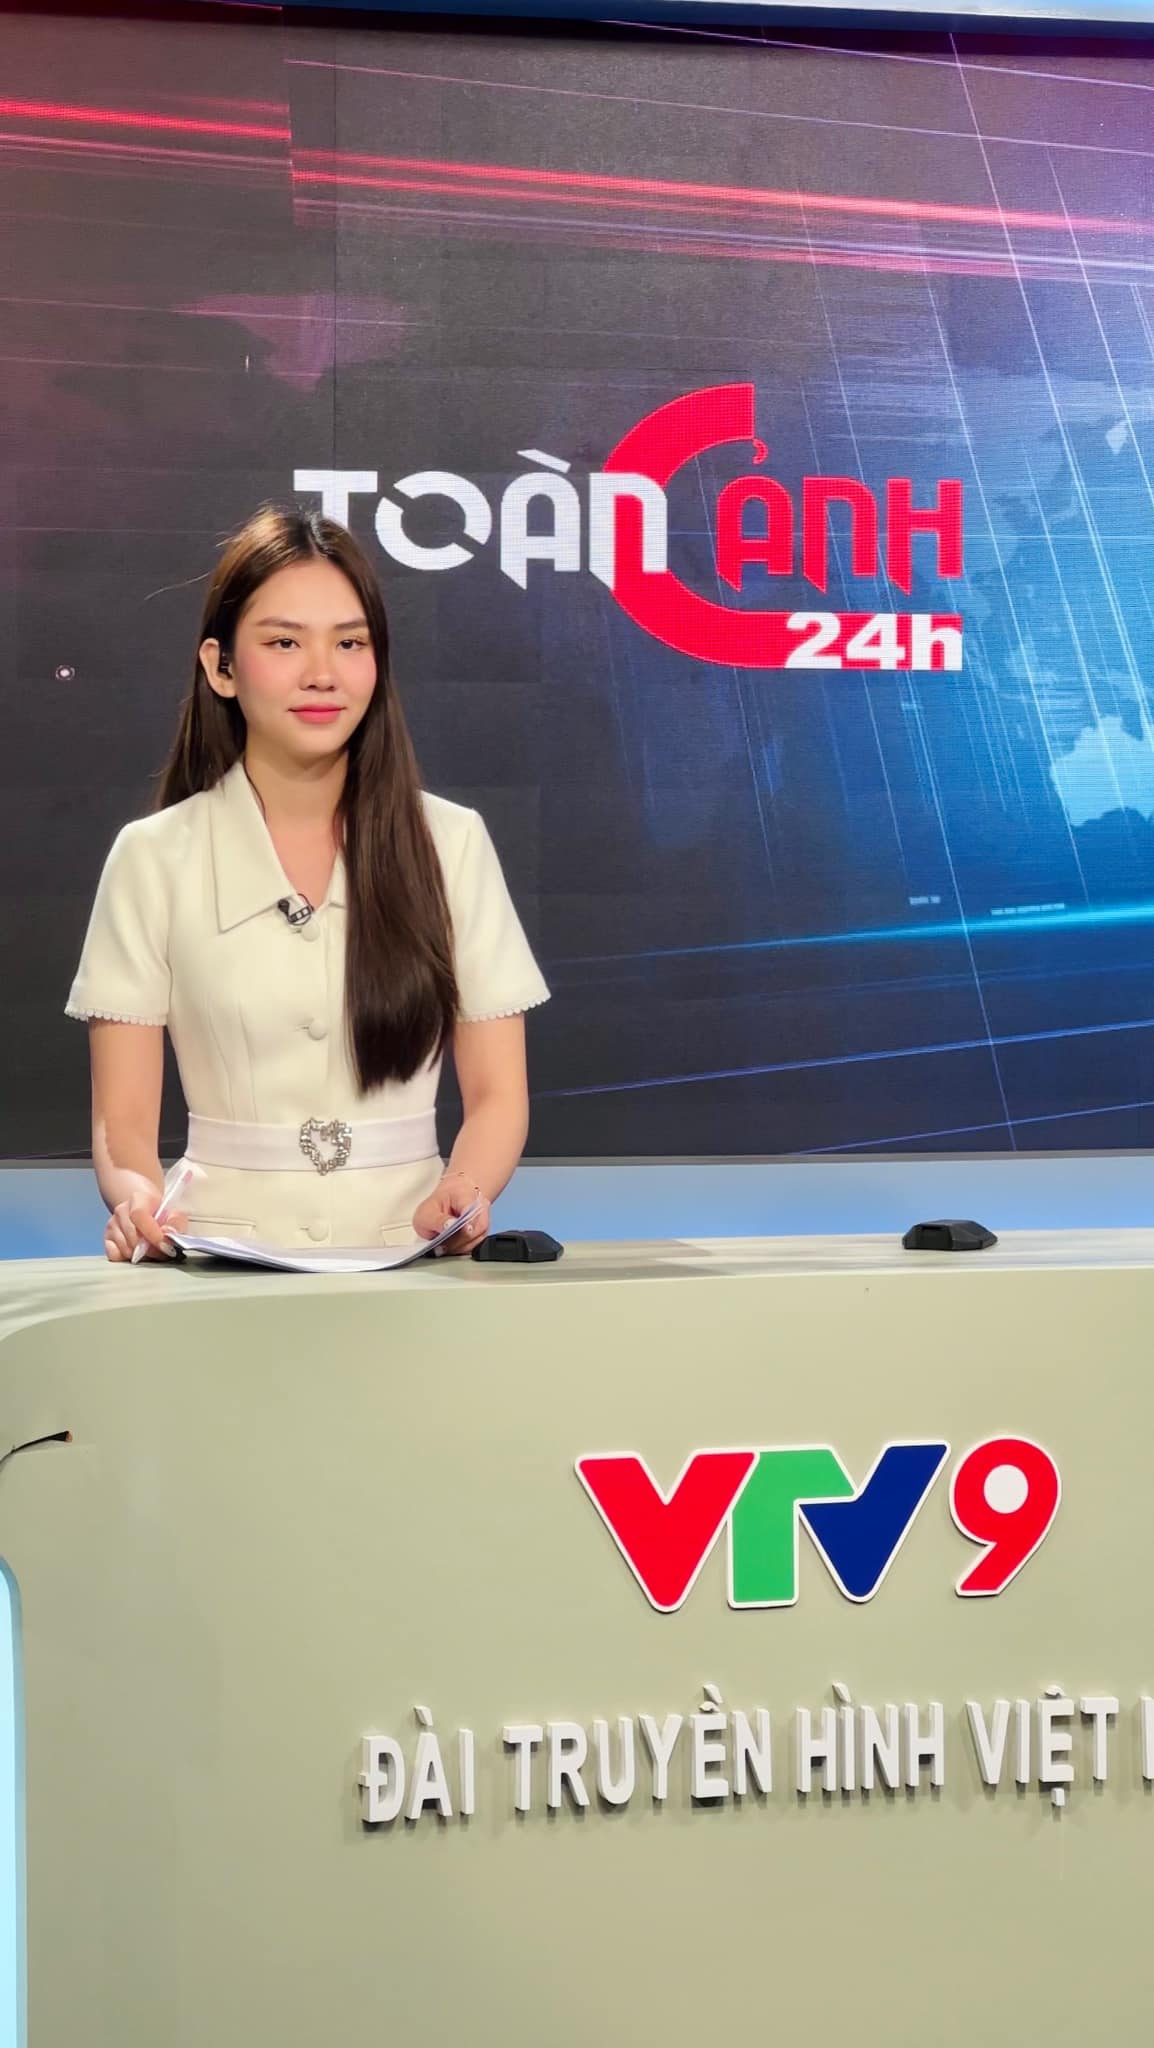 Hình ảnh Mai Phương khi dẫn bản tin trên sóng truyền hình. Cô chọn cách làm tóc đơn giản, trang điểm vừa đủ để gương mặt trẻ trung và rạng rỡ.